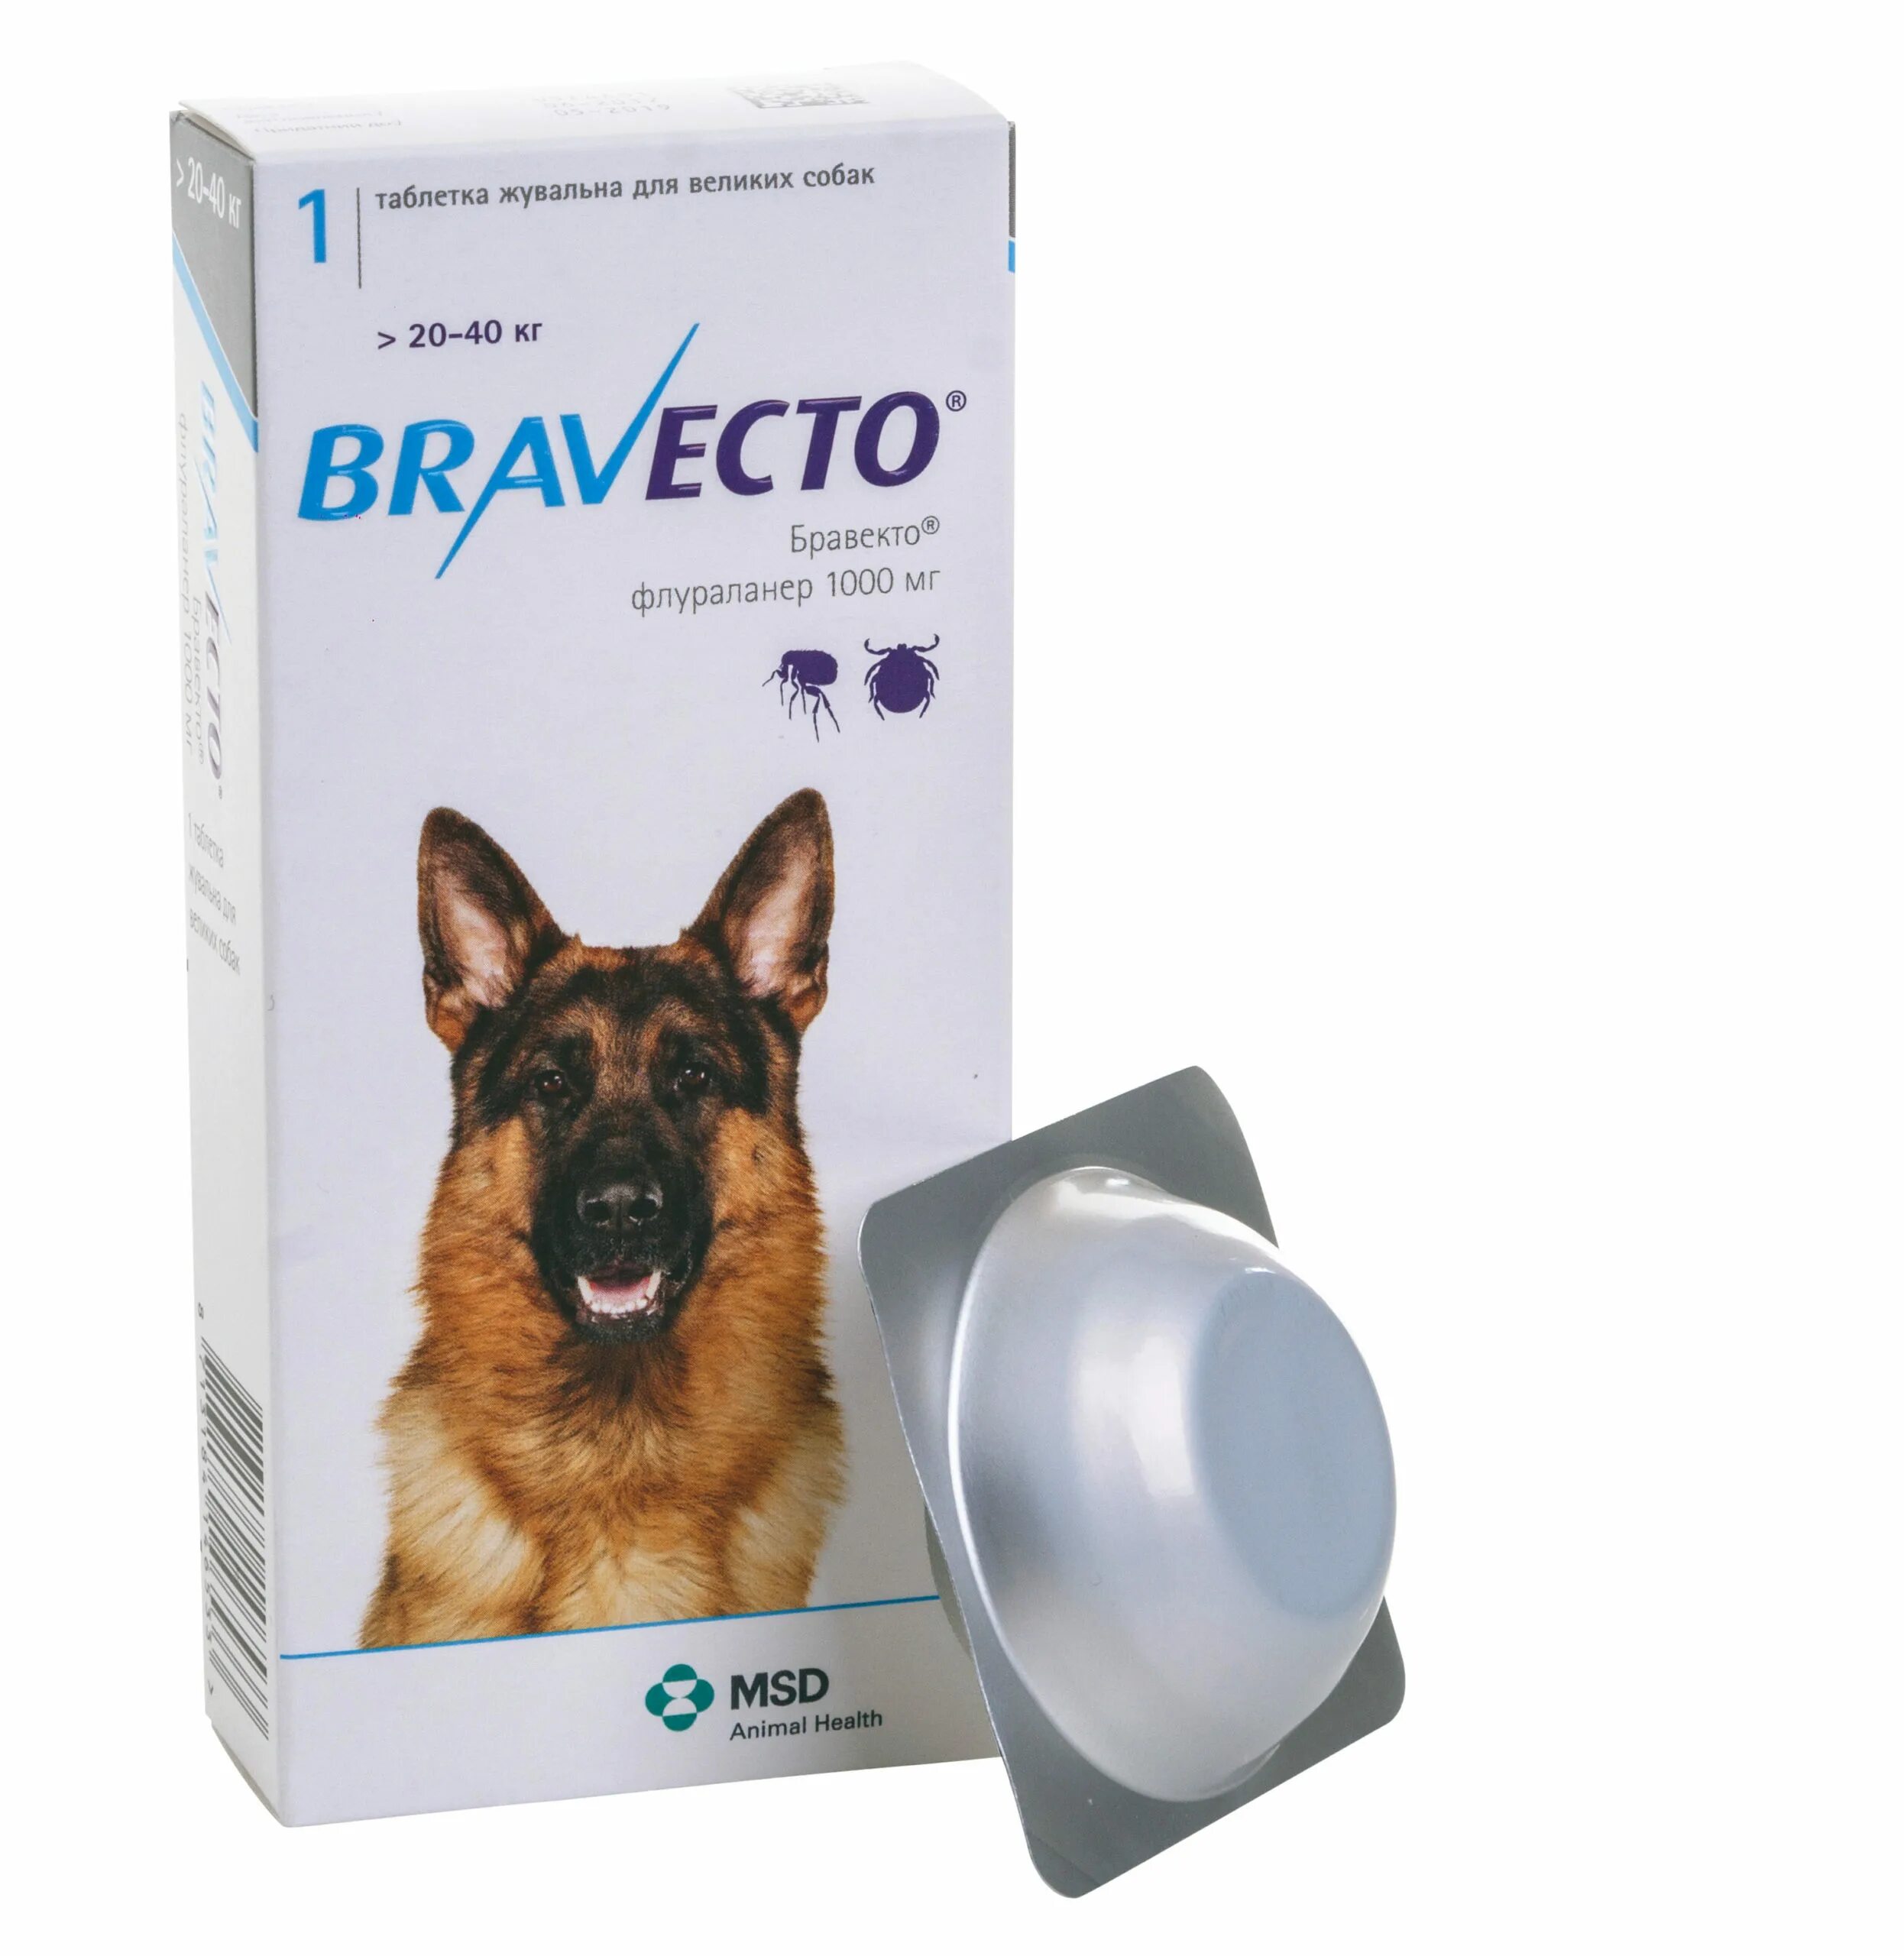 Таблетки от клещей купить минск. Таблетки от блох и клещей для собак Бравекто. Бравекто для собак 20-40 кг таблетки. Бравекто (Bravecto) 20-40 кг, таблетка 1000 мг. Бравекто 112.5 мг Флураланер.